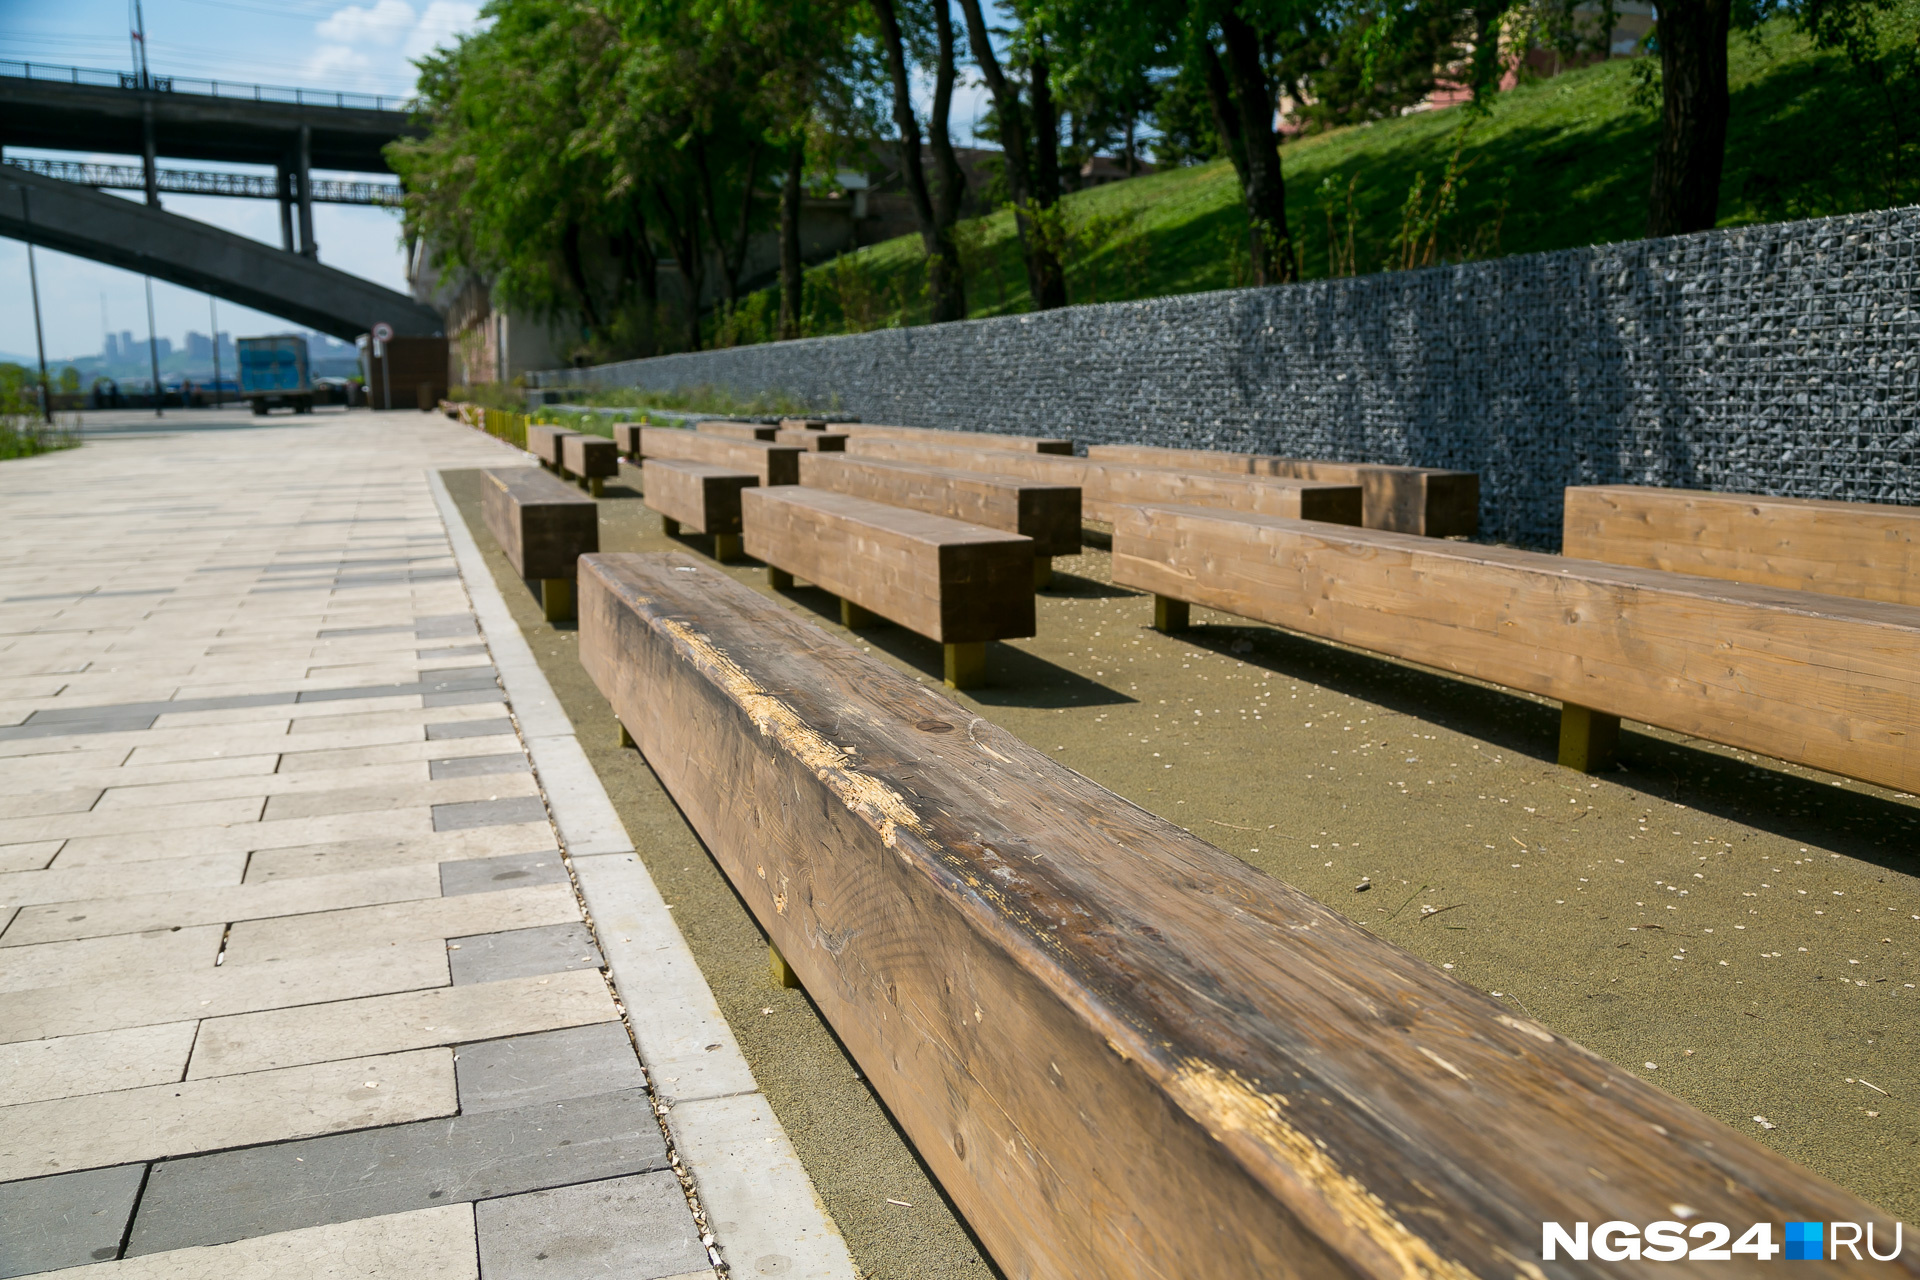 Необычные скамейки, подпорные стены из камней чем-то напоминают пейзажи Японии: минимализм, простота форм